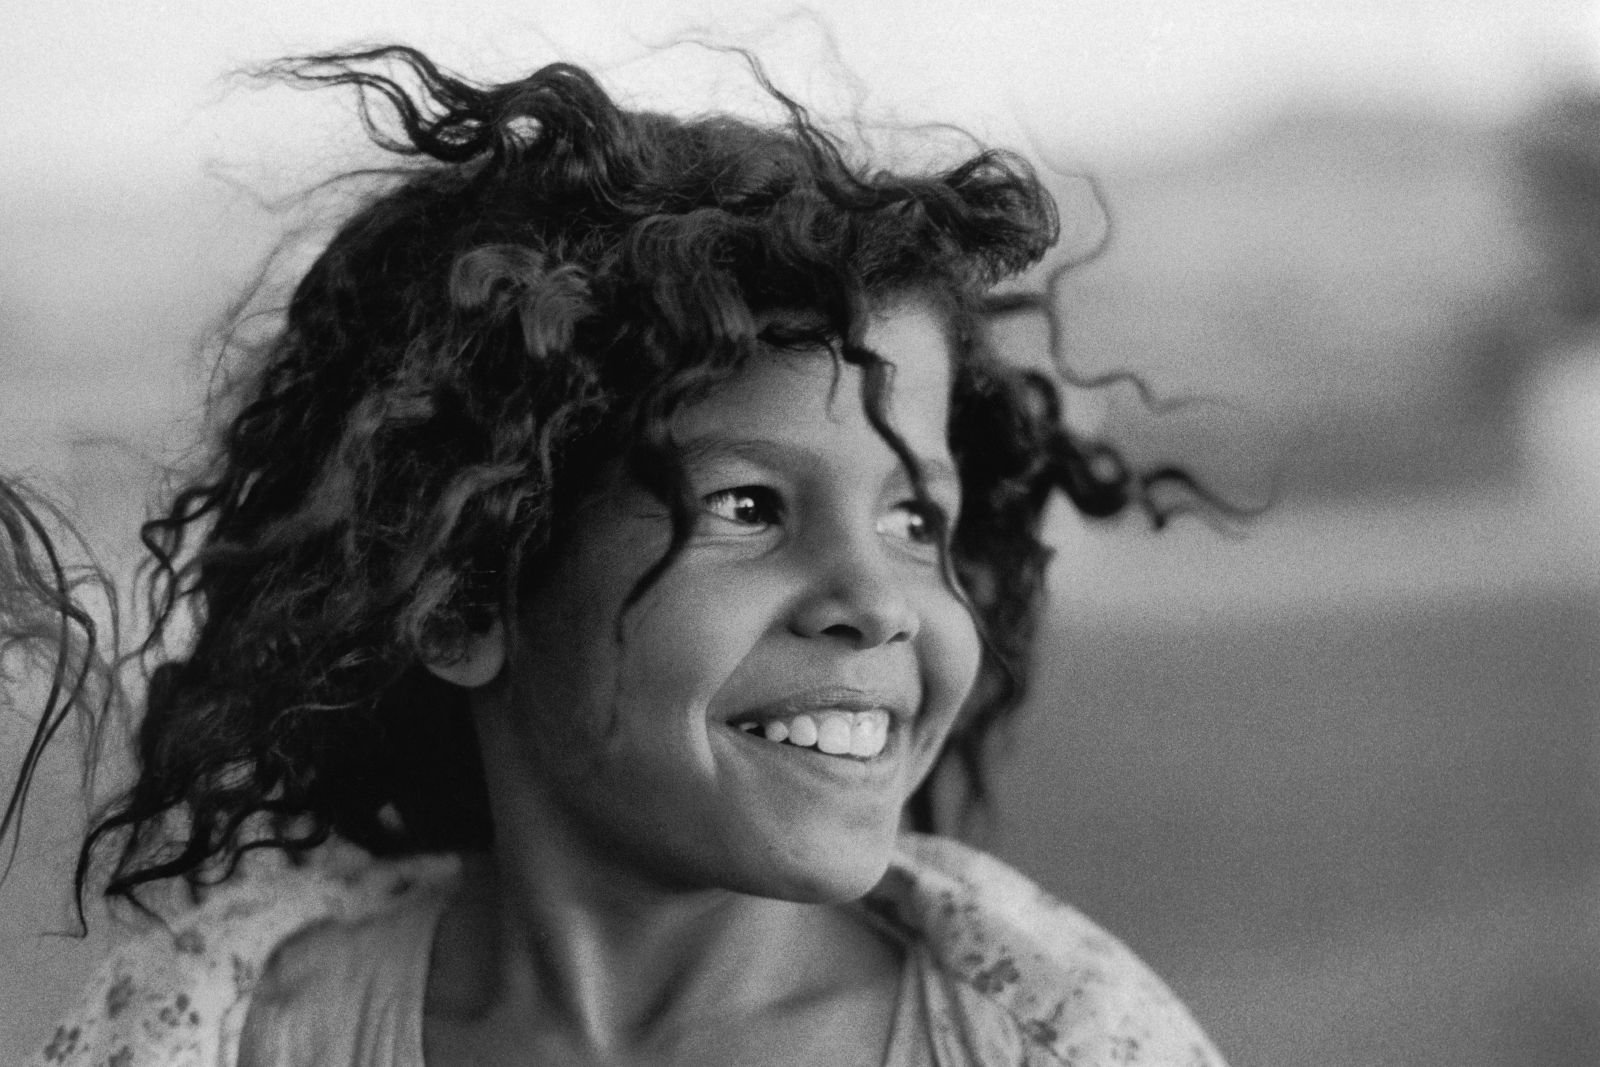 La petite Egyptienne, 1983 © Sabine Weiss